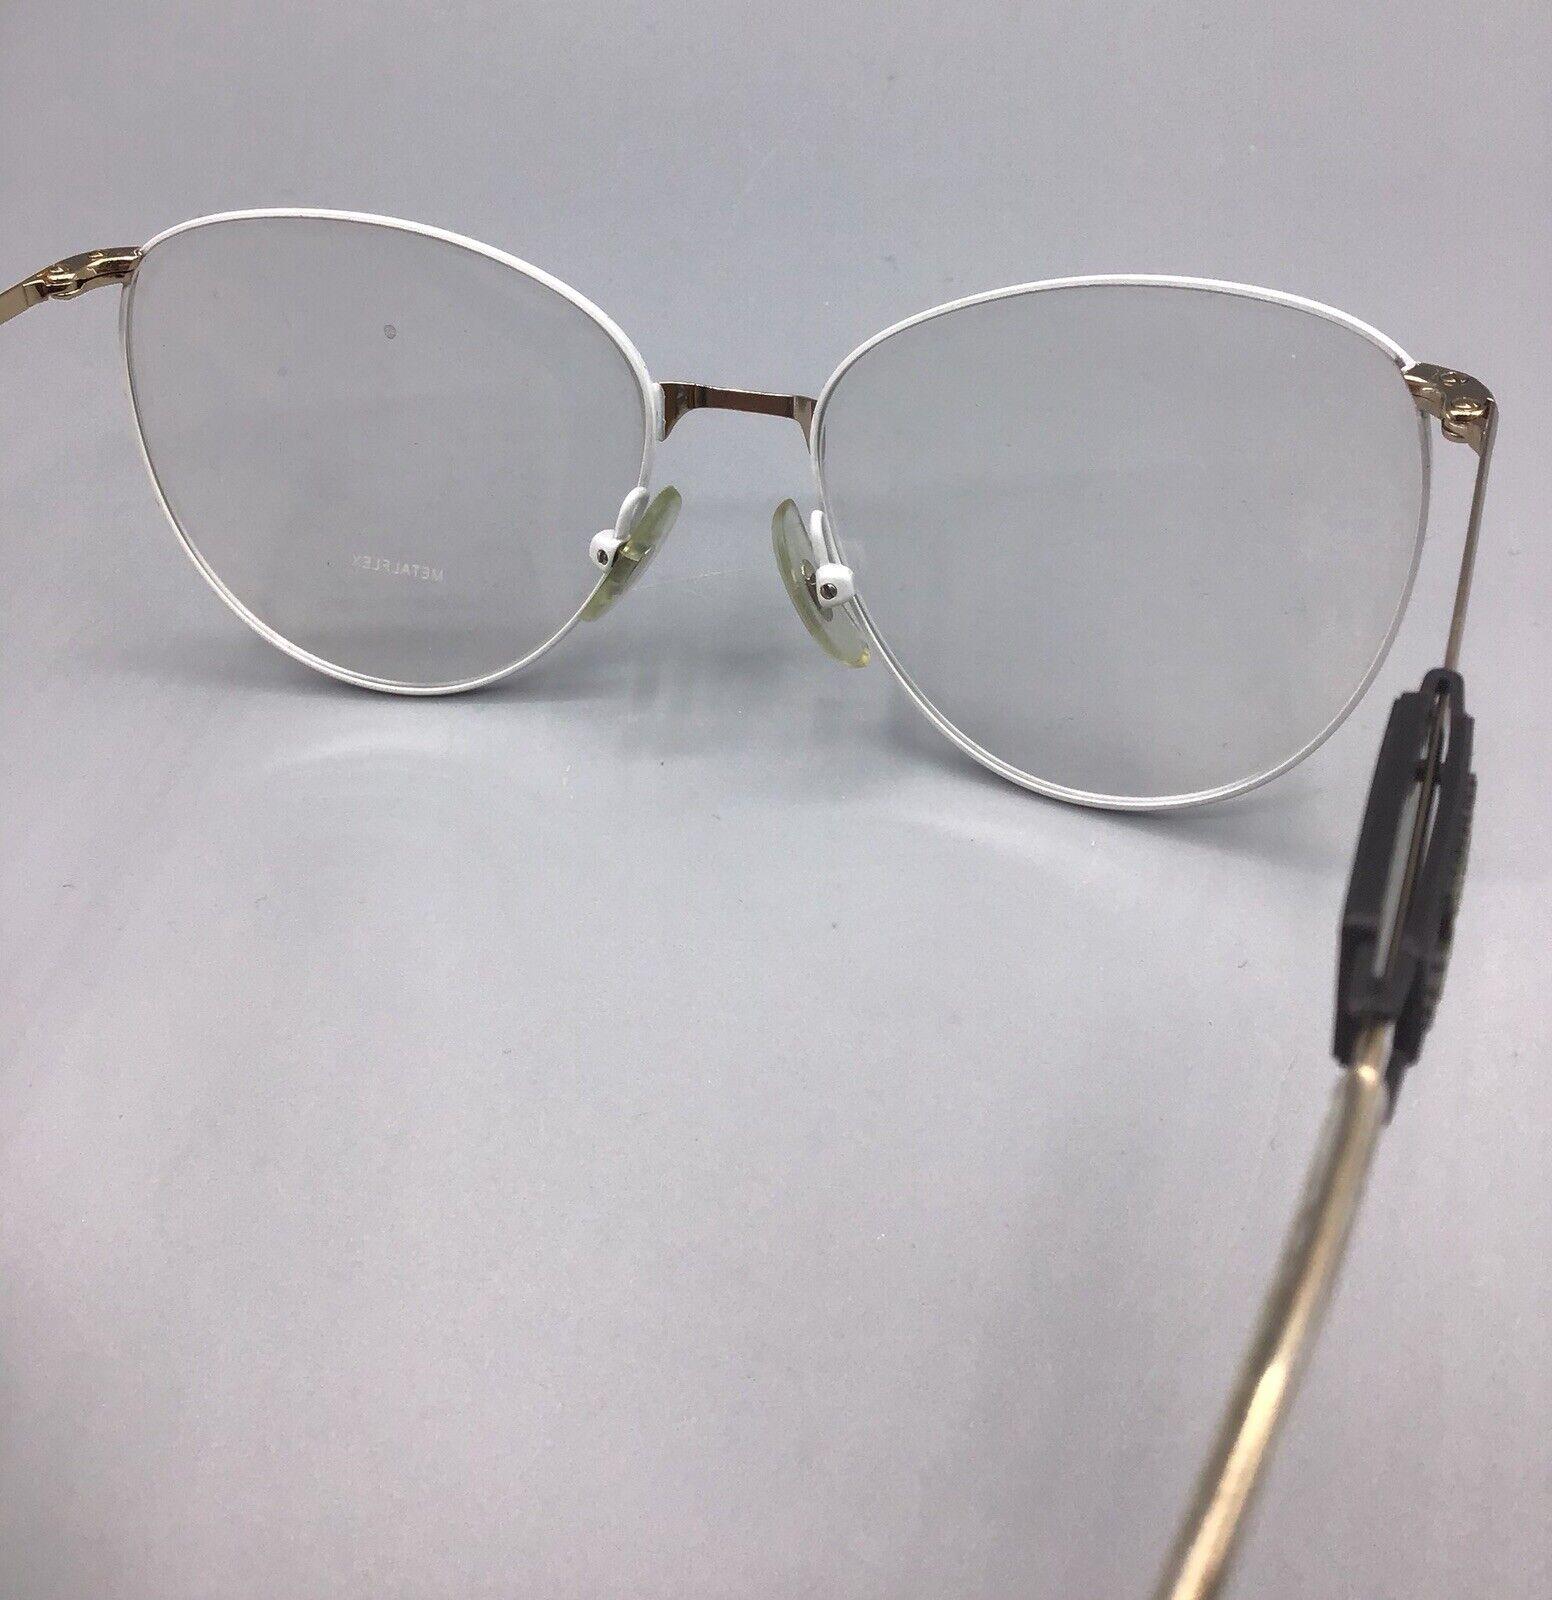 metalflex dora bianco white occhiale eyewear brillen frame lunettes